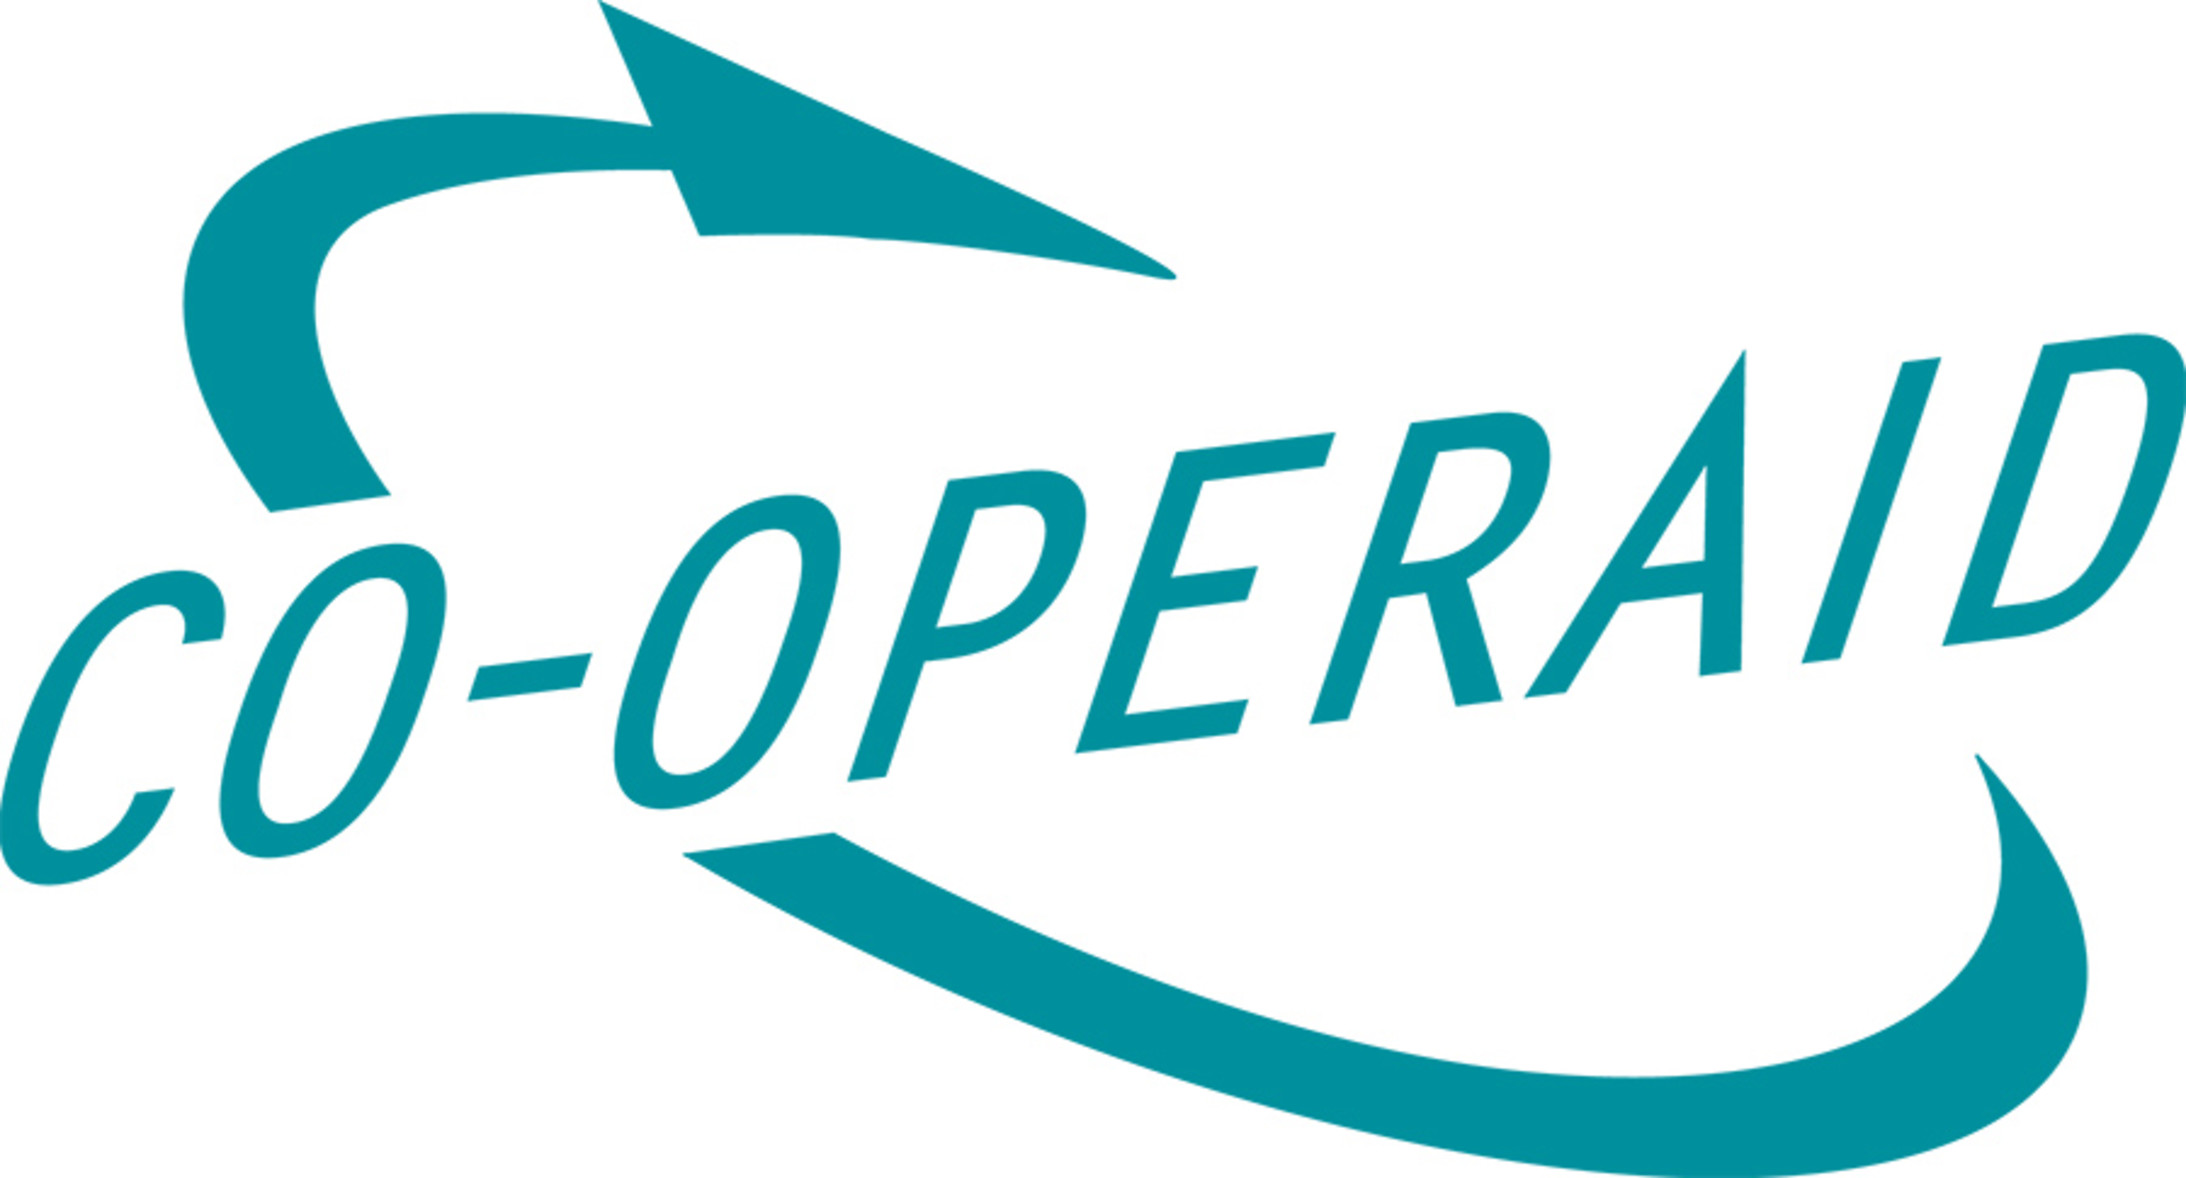 CO-OPERAID Logo bis 2009